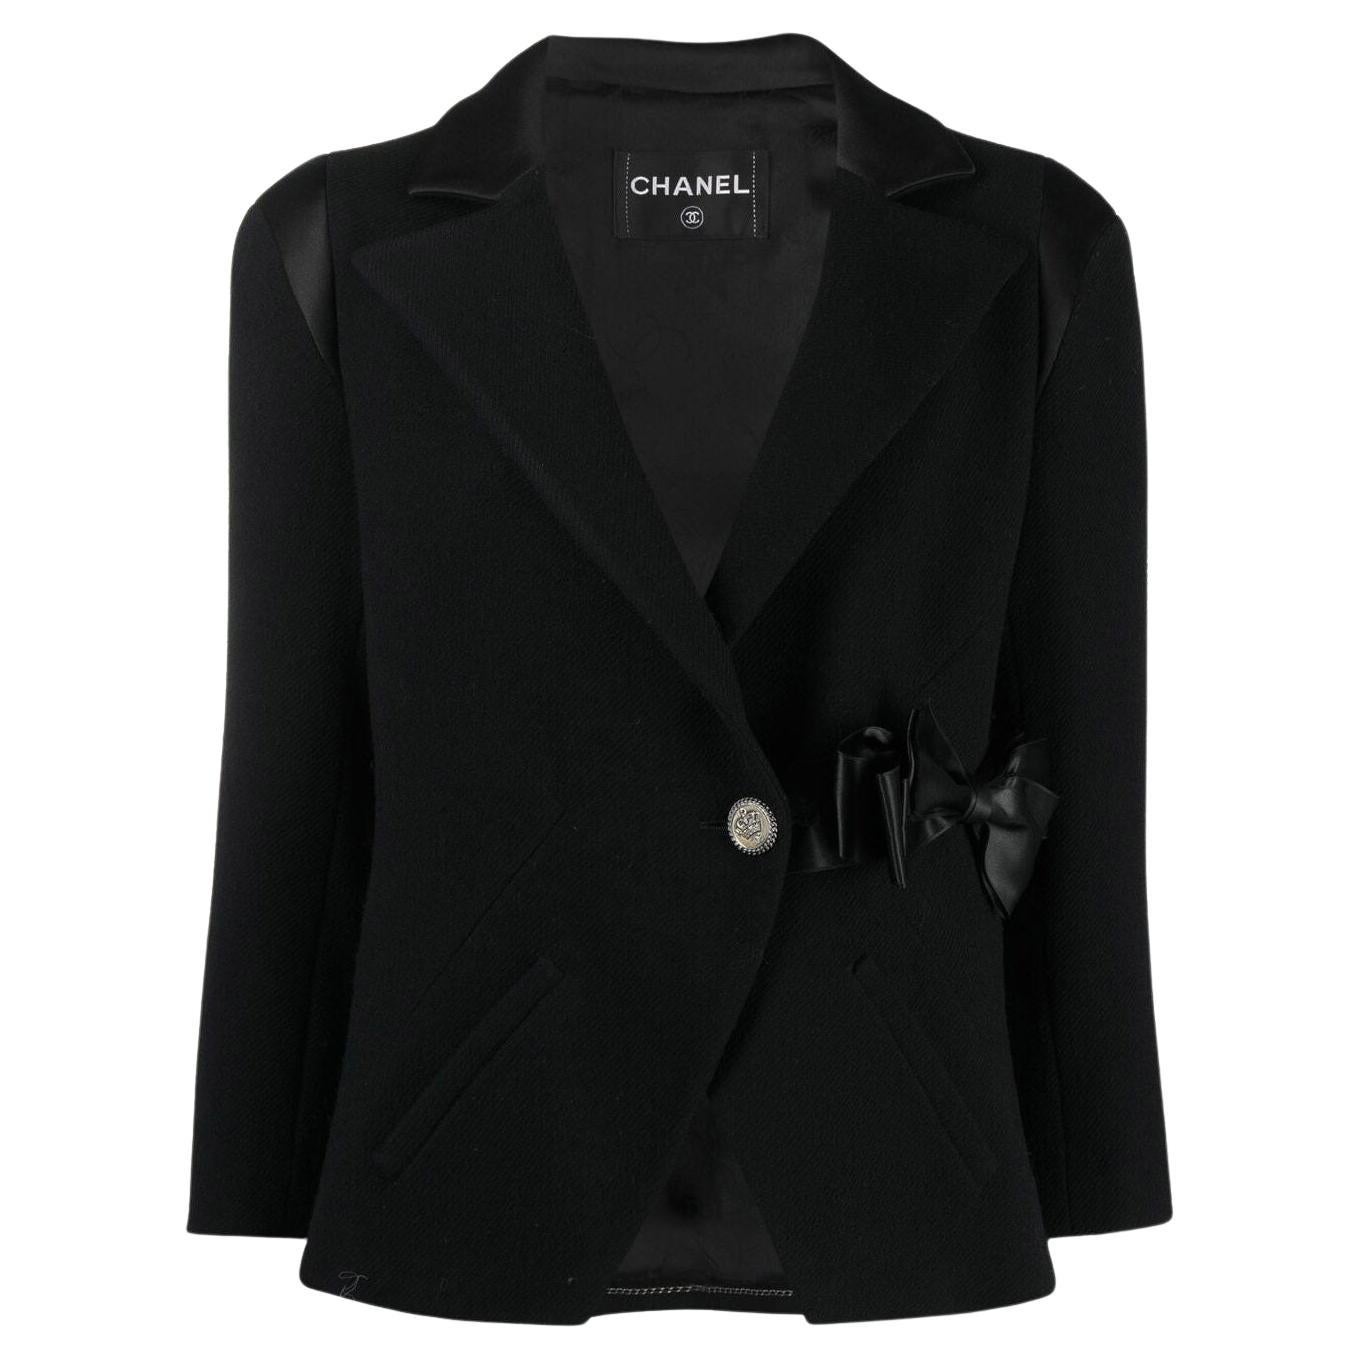 Chanel New Paris / London Runway Black Tweed Jacket For Sale